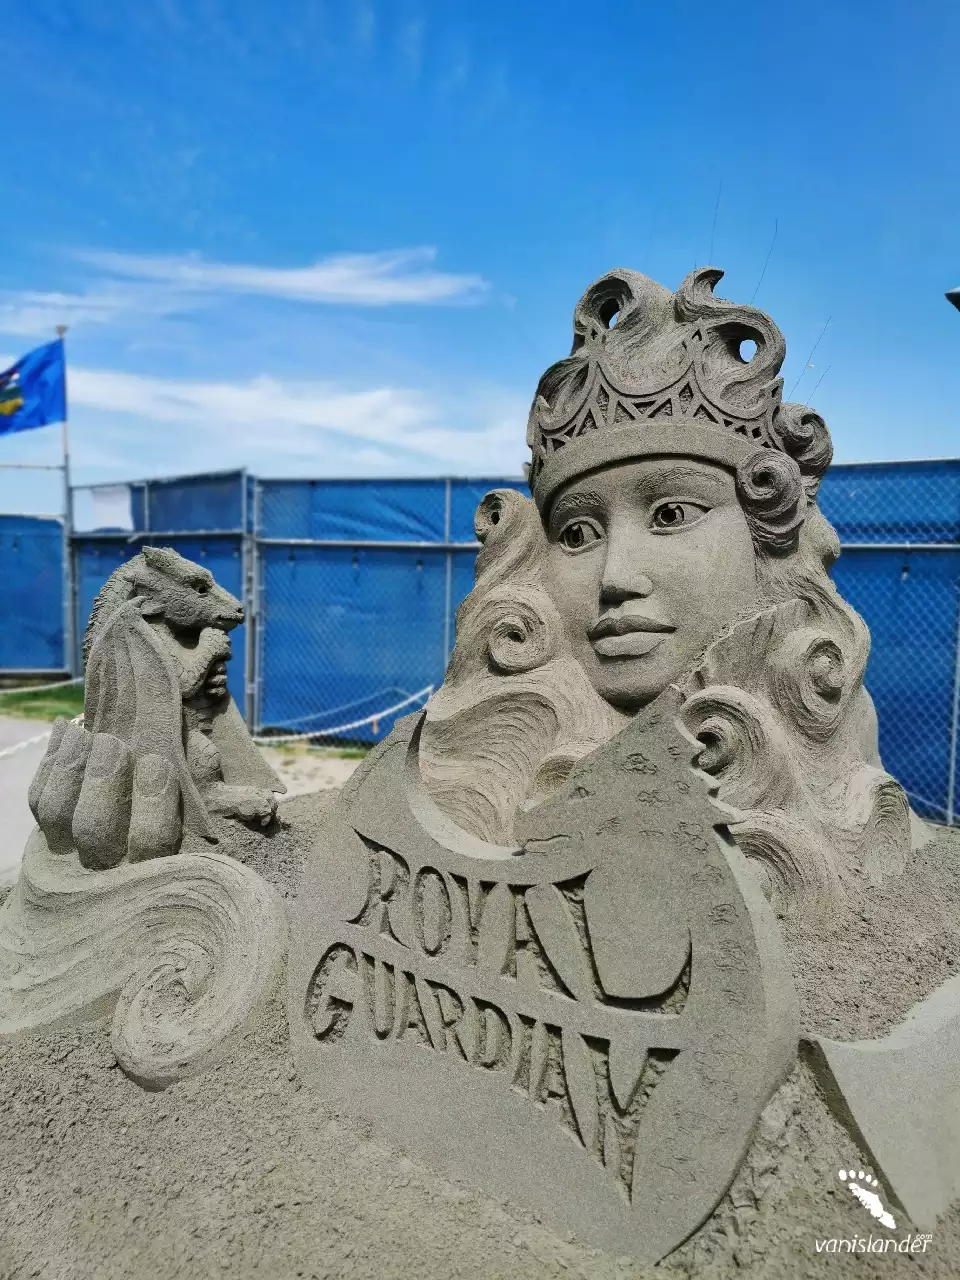 Royal Guardian Sand Sculpture - Parksville Festival, Vancouver Island